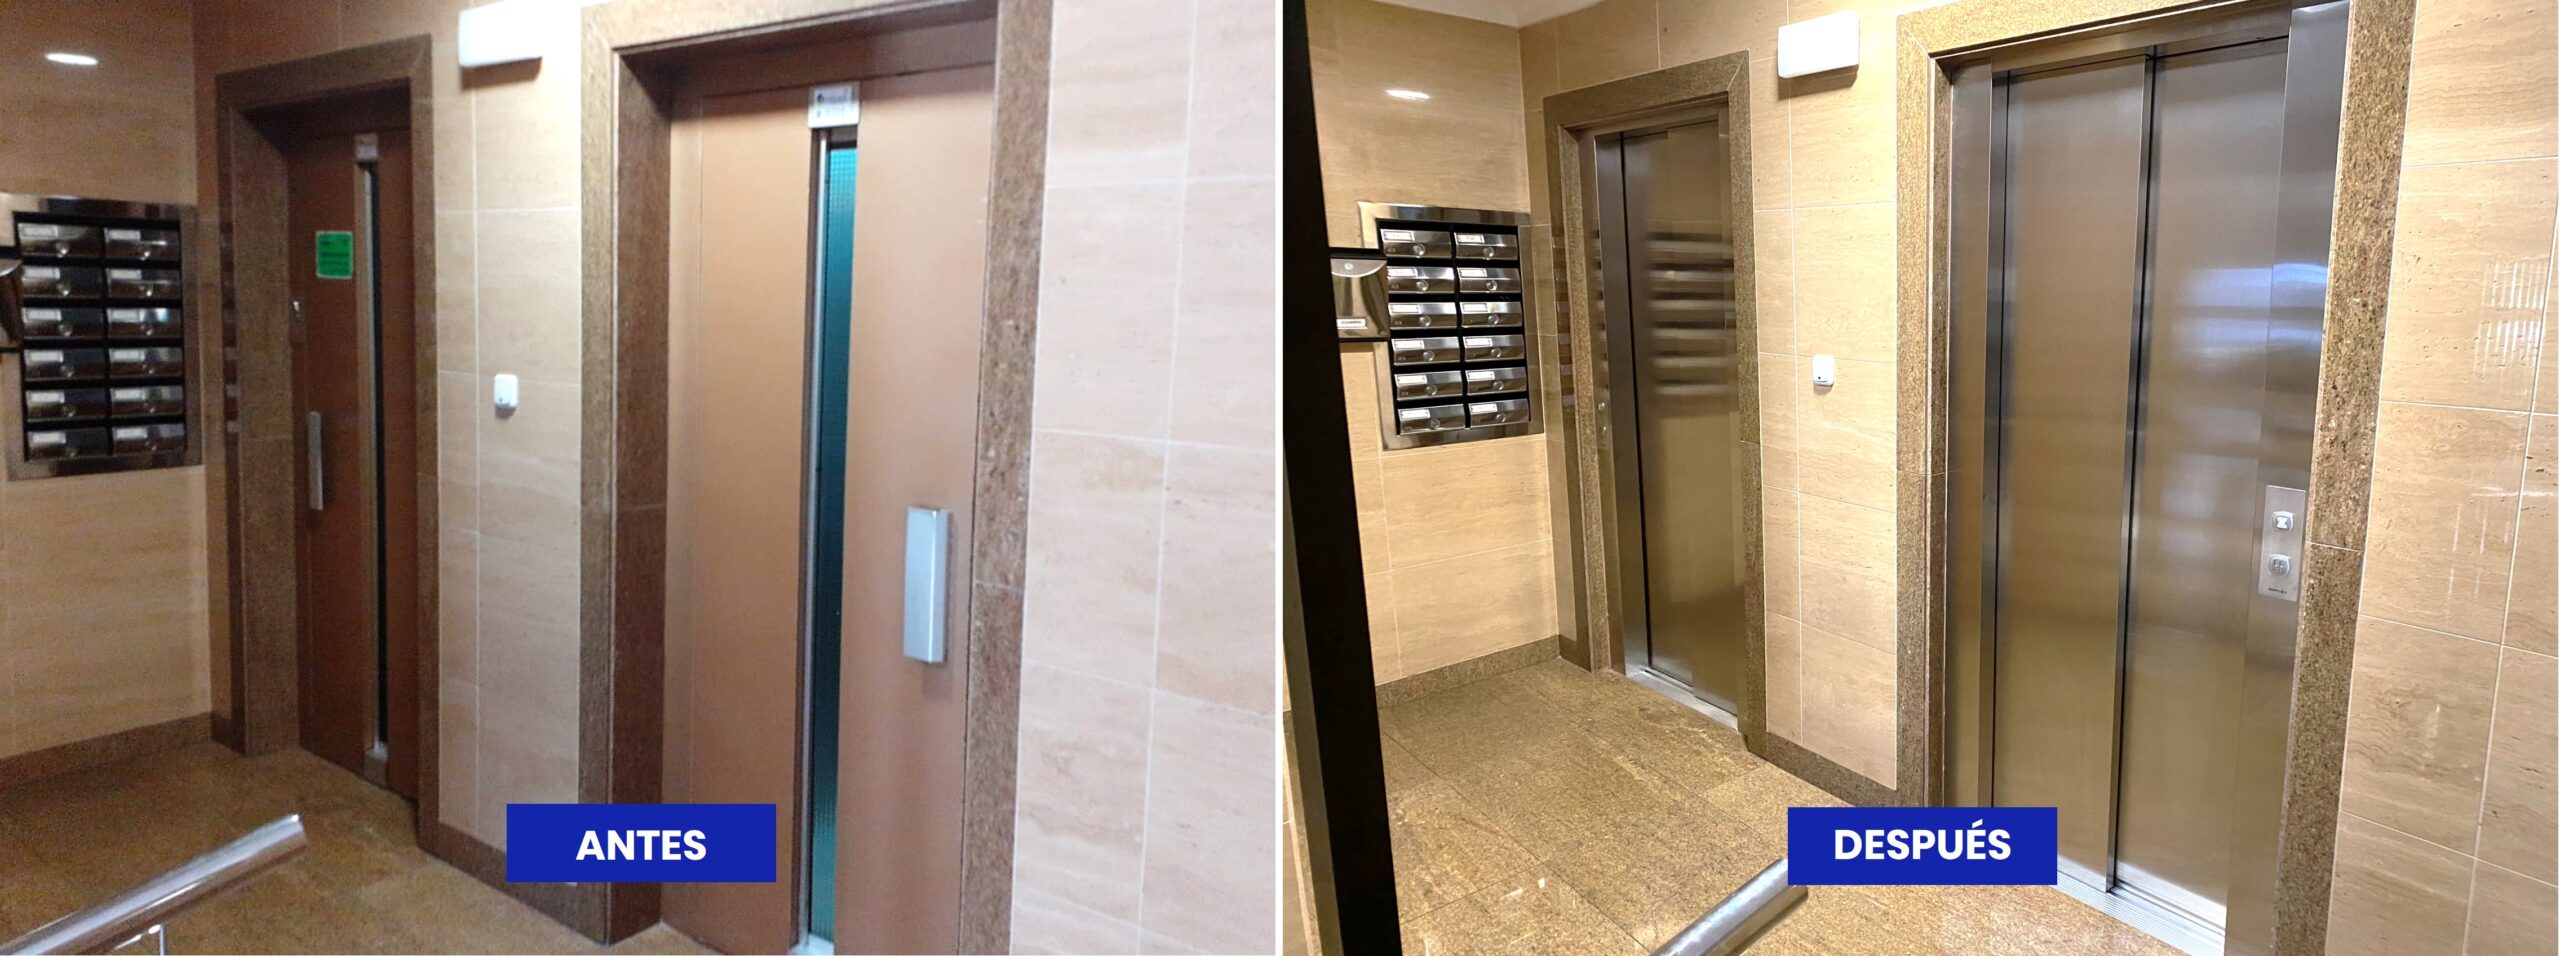 Antes y después de la modernización de las puertas de un ascensor